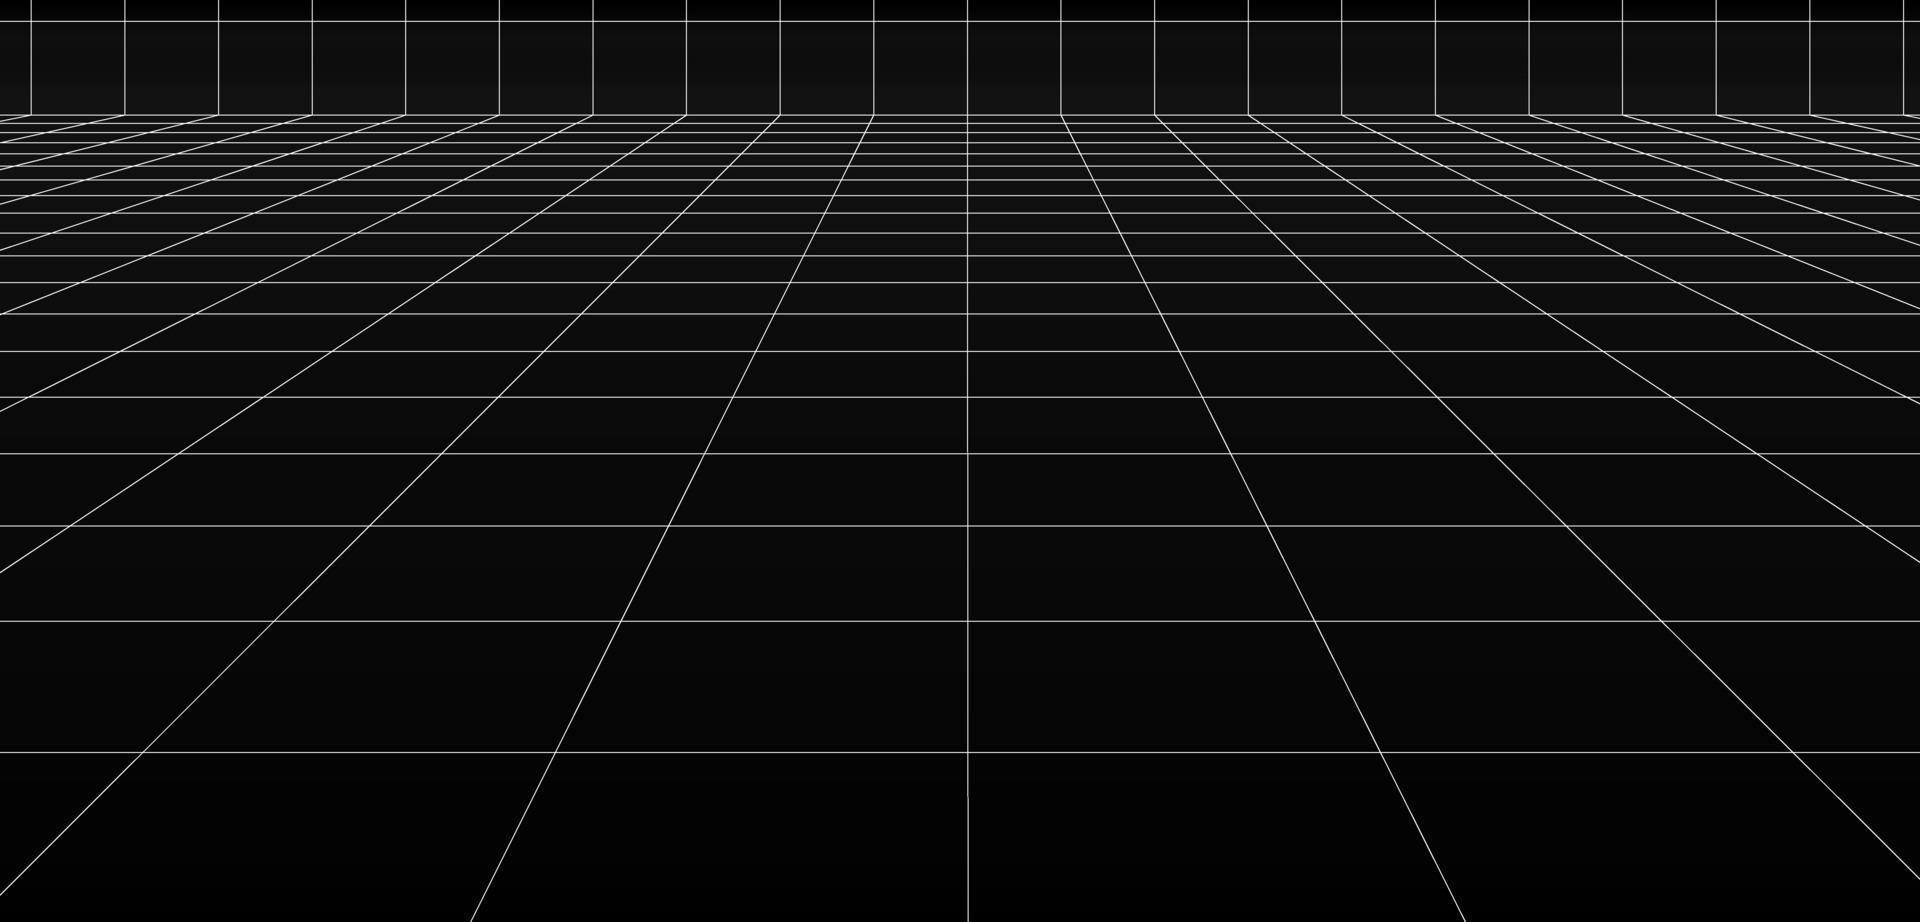 die digitale Bodenhintergrundflächenseite schwarz-weiße Seite der Gitterflächenlinie vektor